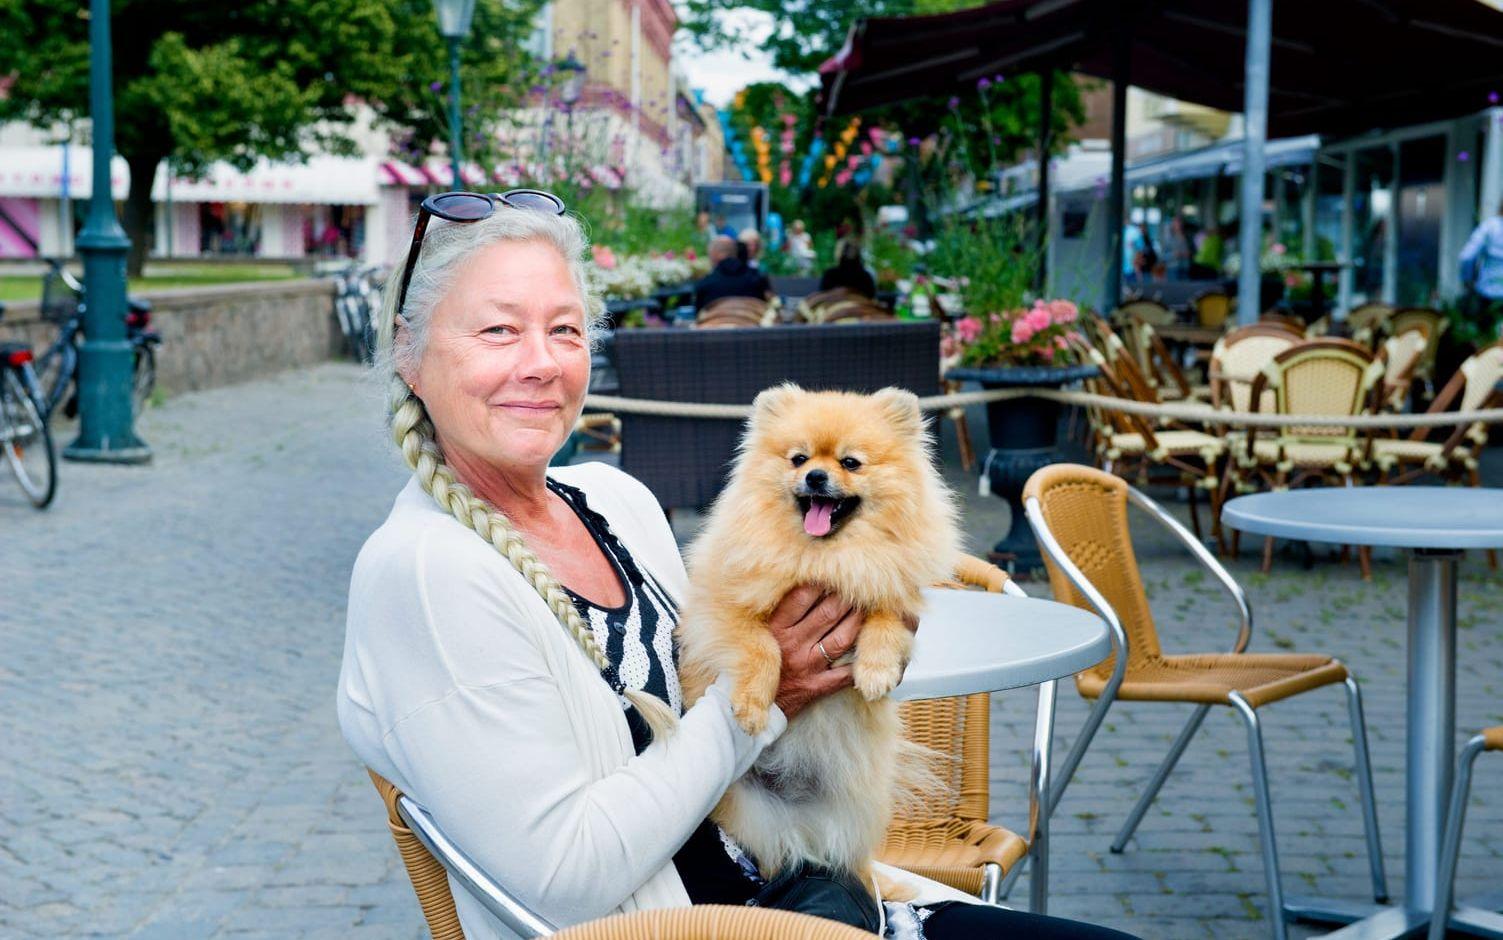 Middagsvänner. Pia Mattsson, som driver Kåpåsens kennel, brukar ta med sig sin hund Daisy när hon går ut och äter. Hon tycker att det är dåligt att flera restauranger i Varberg inte välkomnar hundar. Bild: Aline Lessner